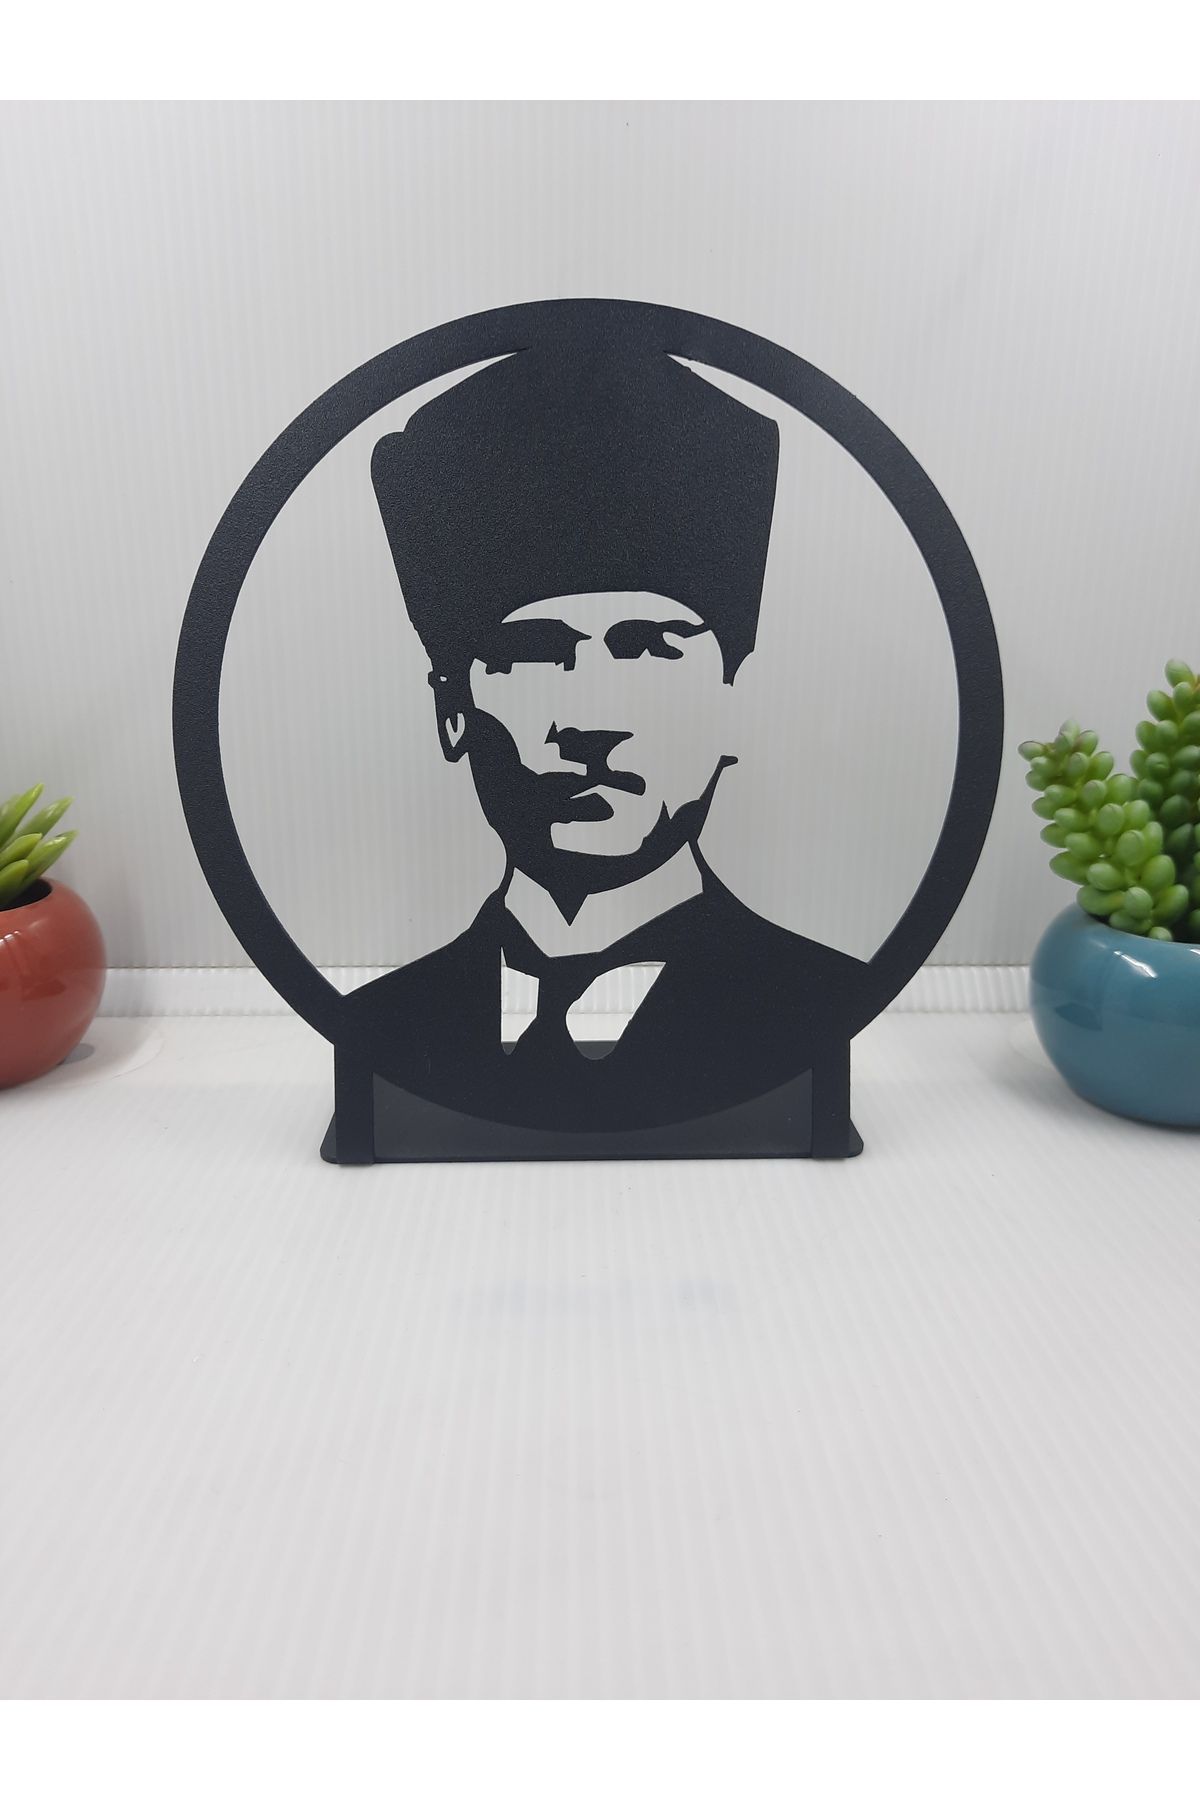 Gowpenart Atatürk Yuvarlak Çerçeveli Masaüstü Metal Büst -Ev / Ofis Dekoru- Hediye Biblo -18 x 18 Cm